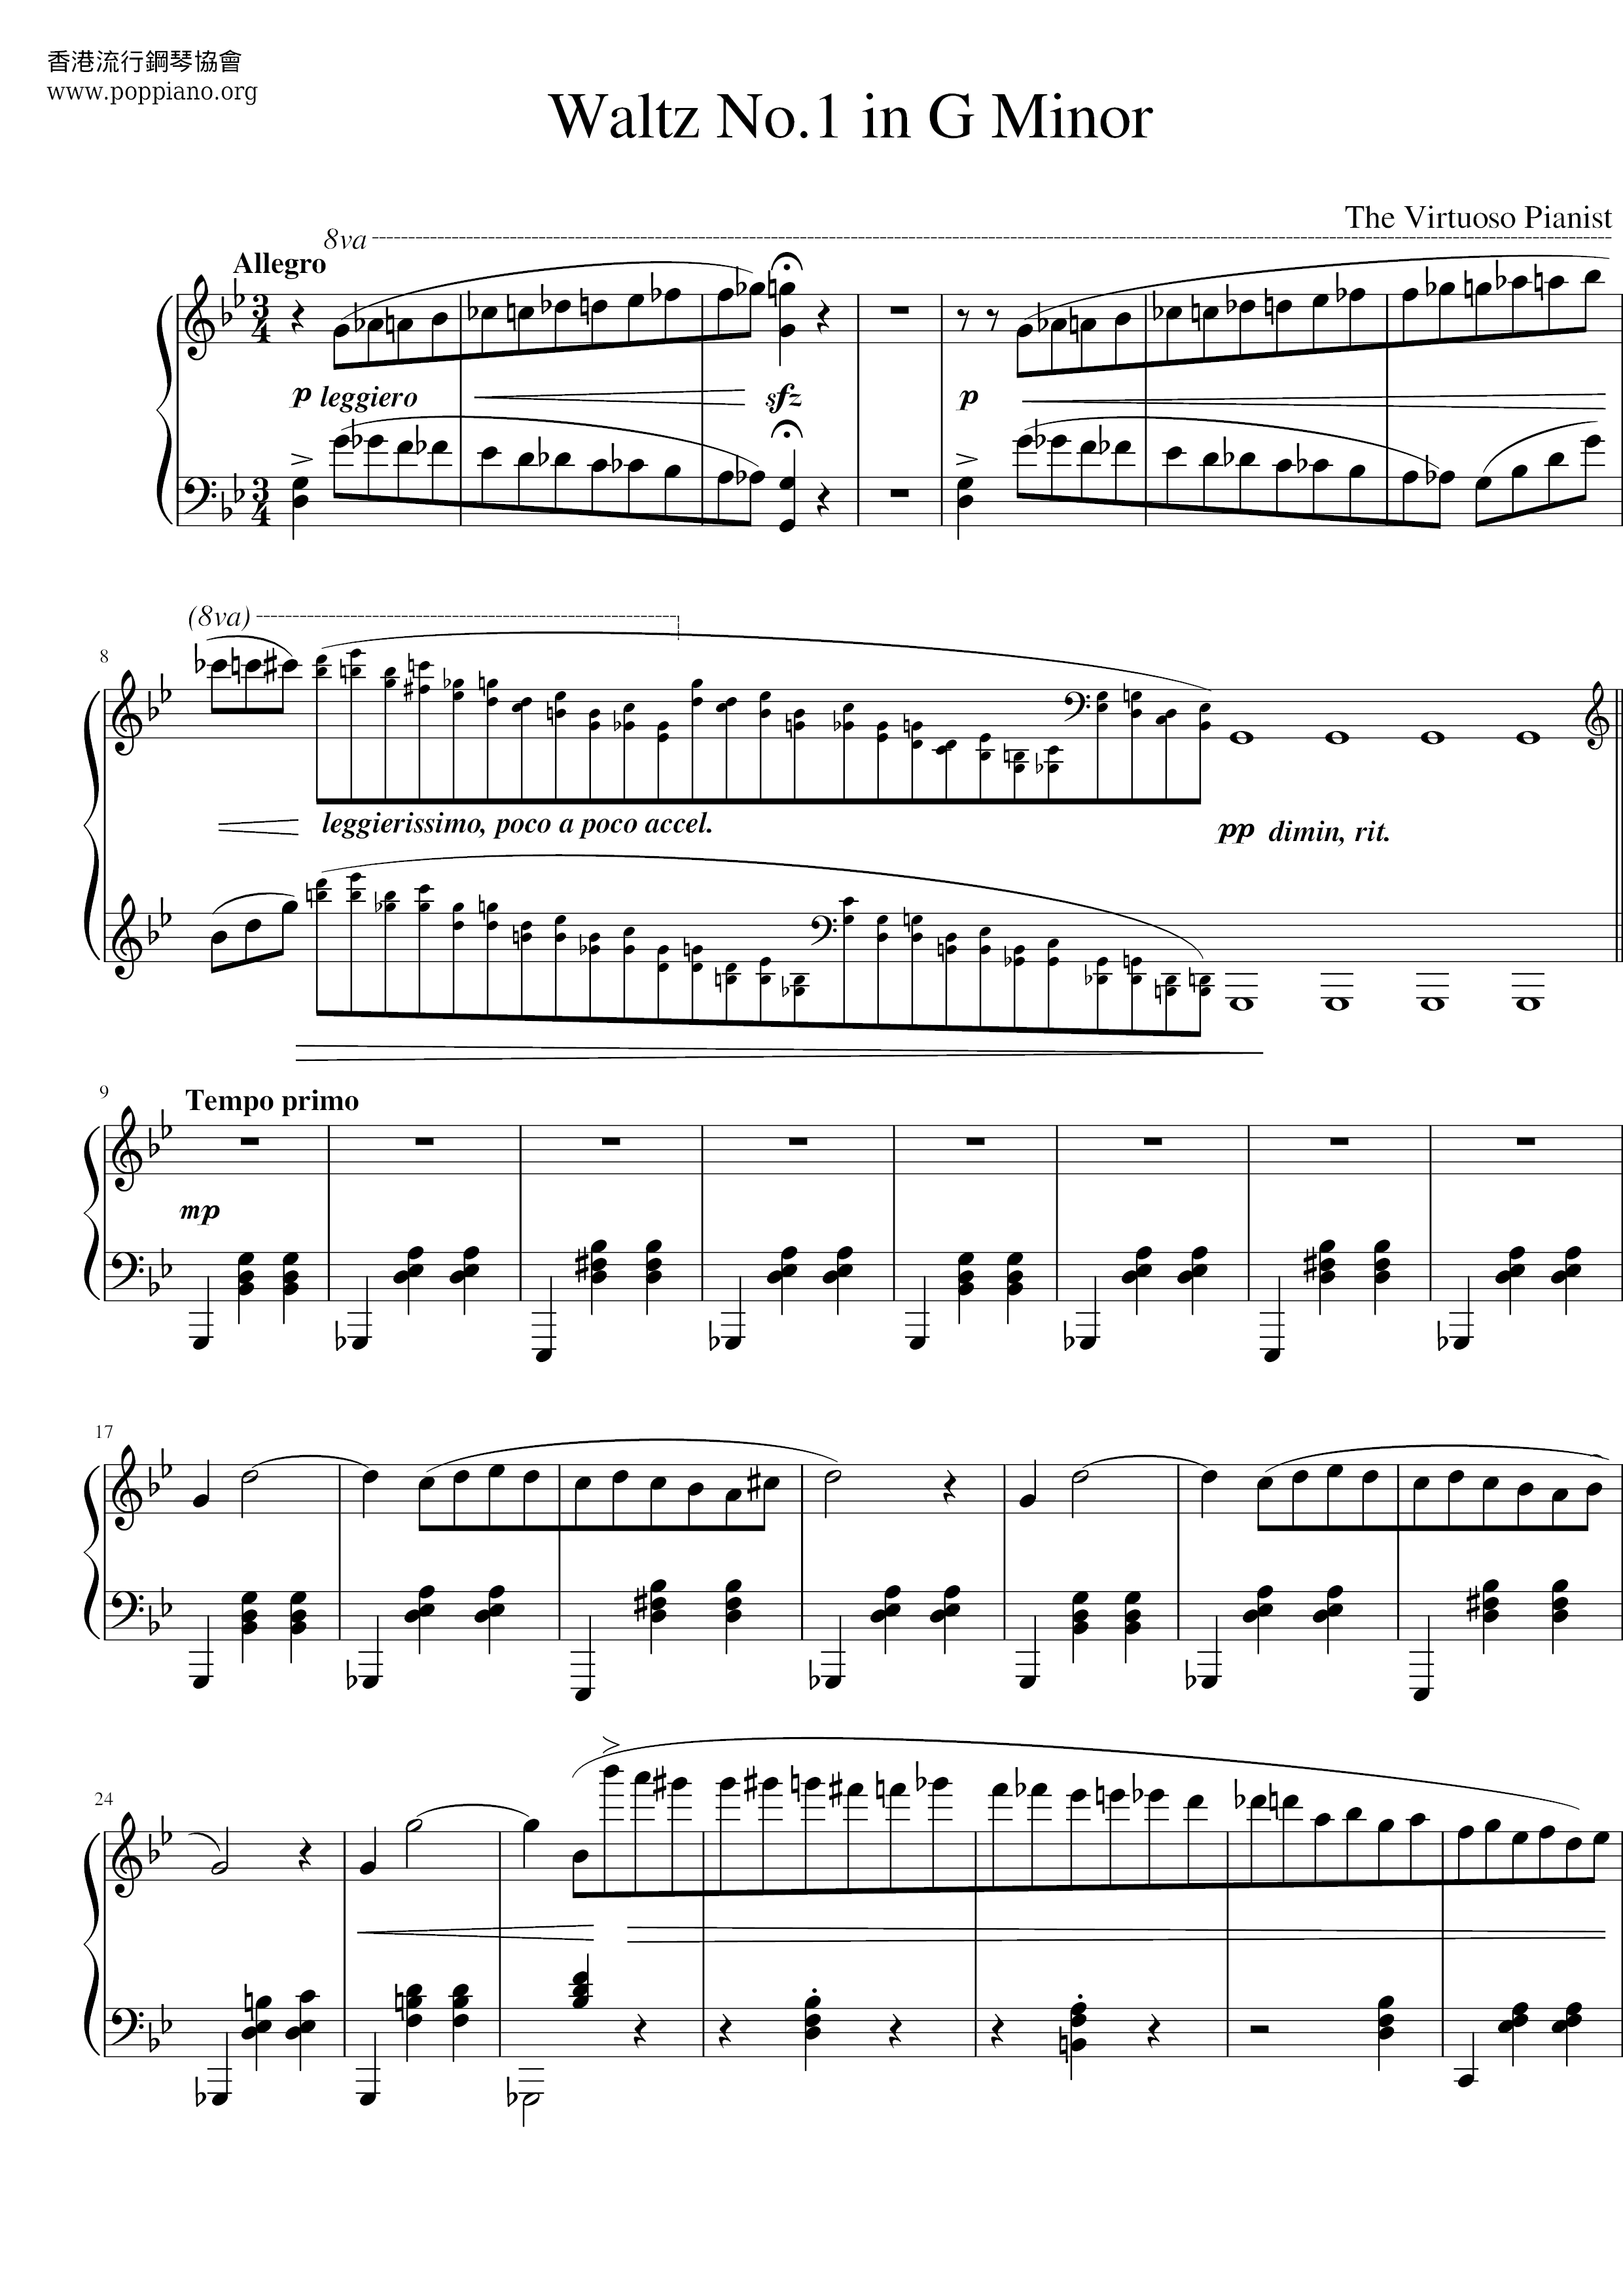 Waltz No.1 in G Minorピアノ譜